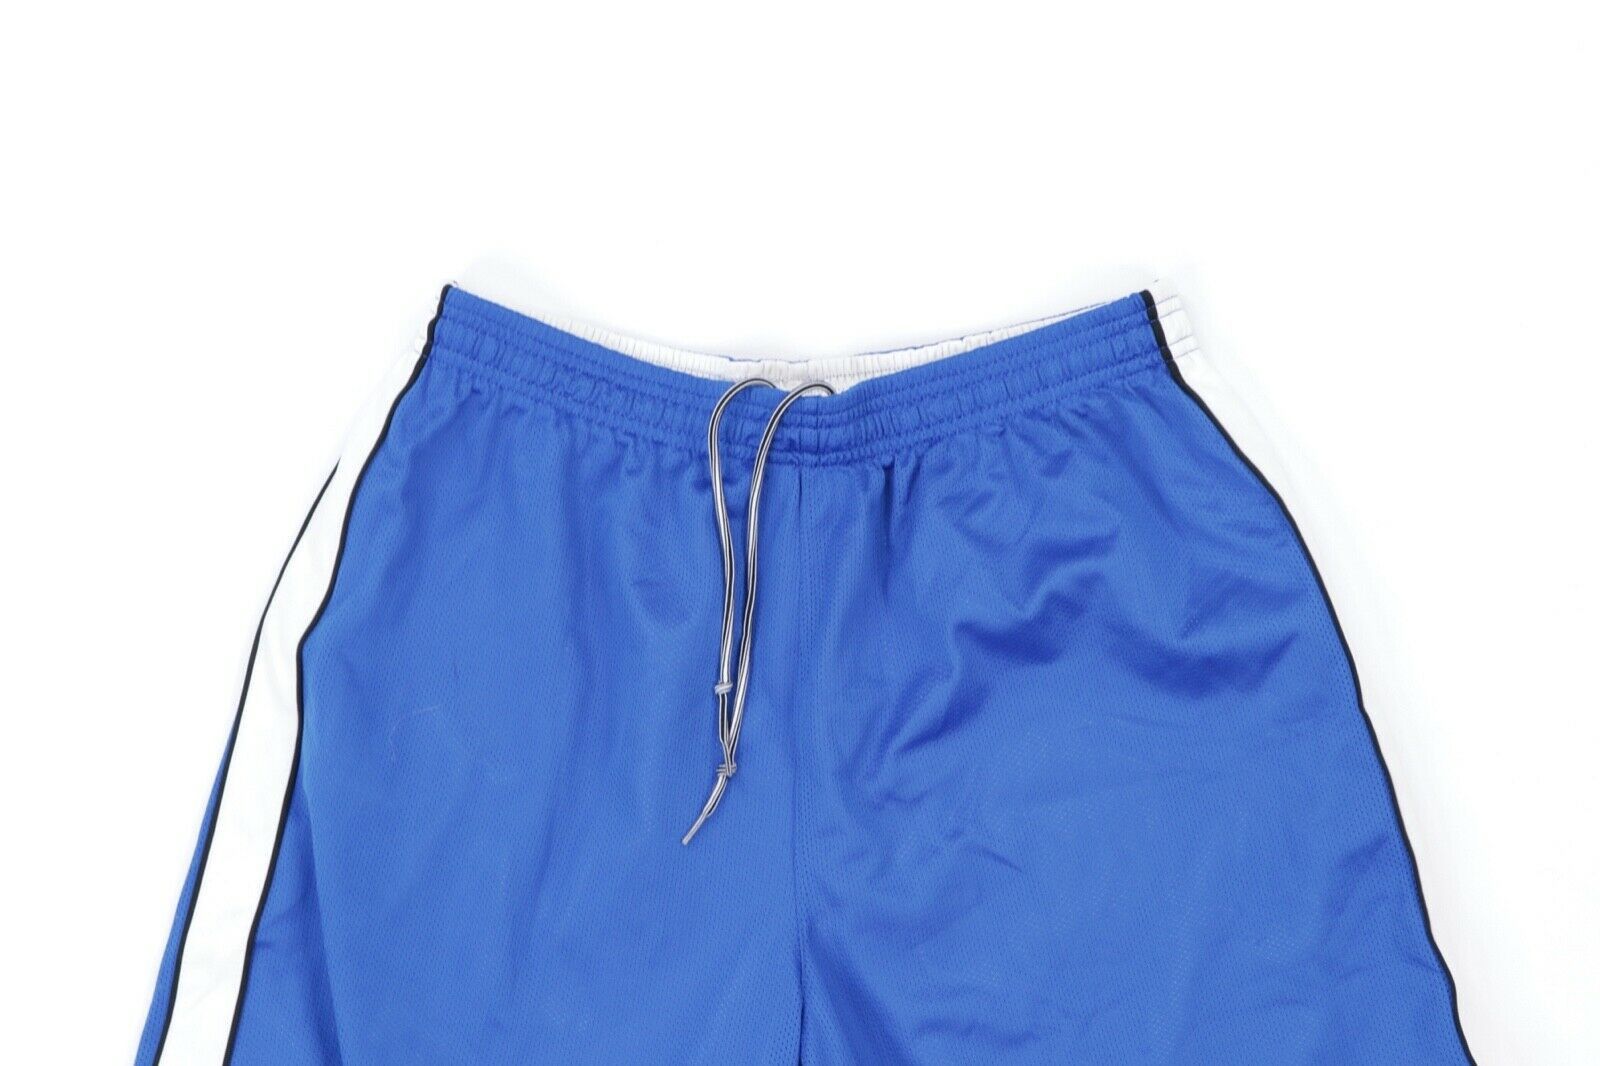 Nike Vintage Nike Total 90 Reversible Soccer Shorts Blue White M Size US 30 / EU 46 - 5 Thumbnail